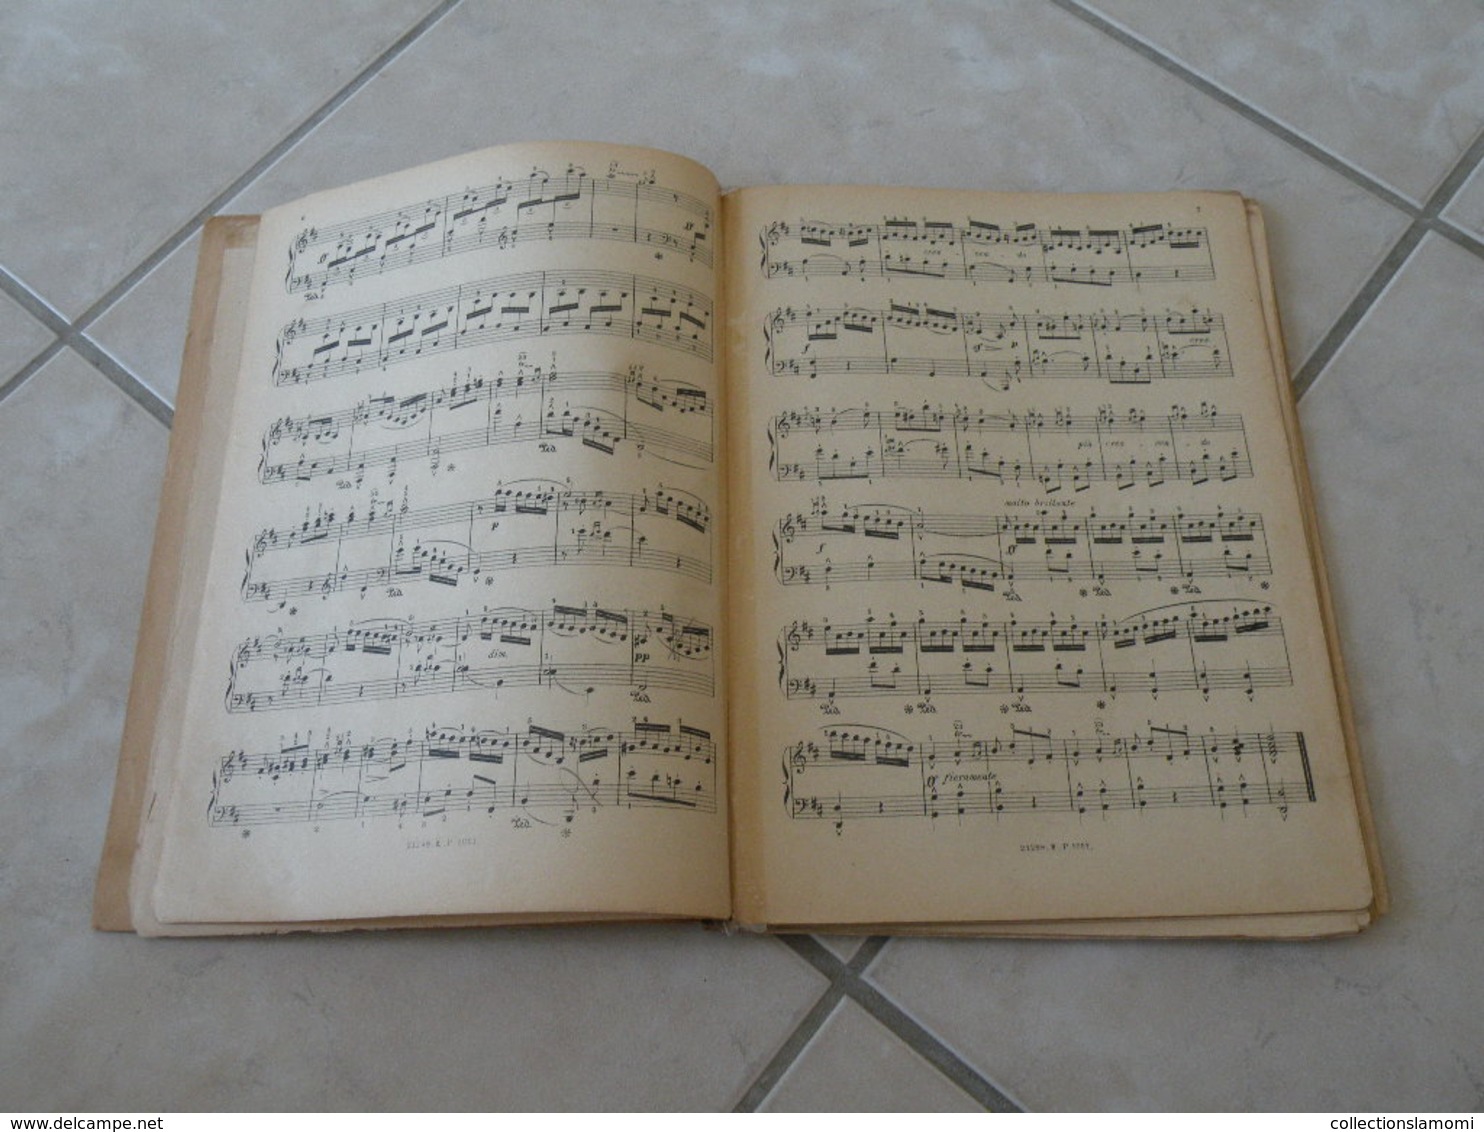 Les Classiques Favoris du Piano -(Voir les photos table des 29 titres)- Livre de Partition 139 pages